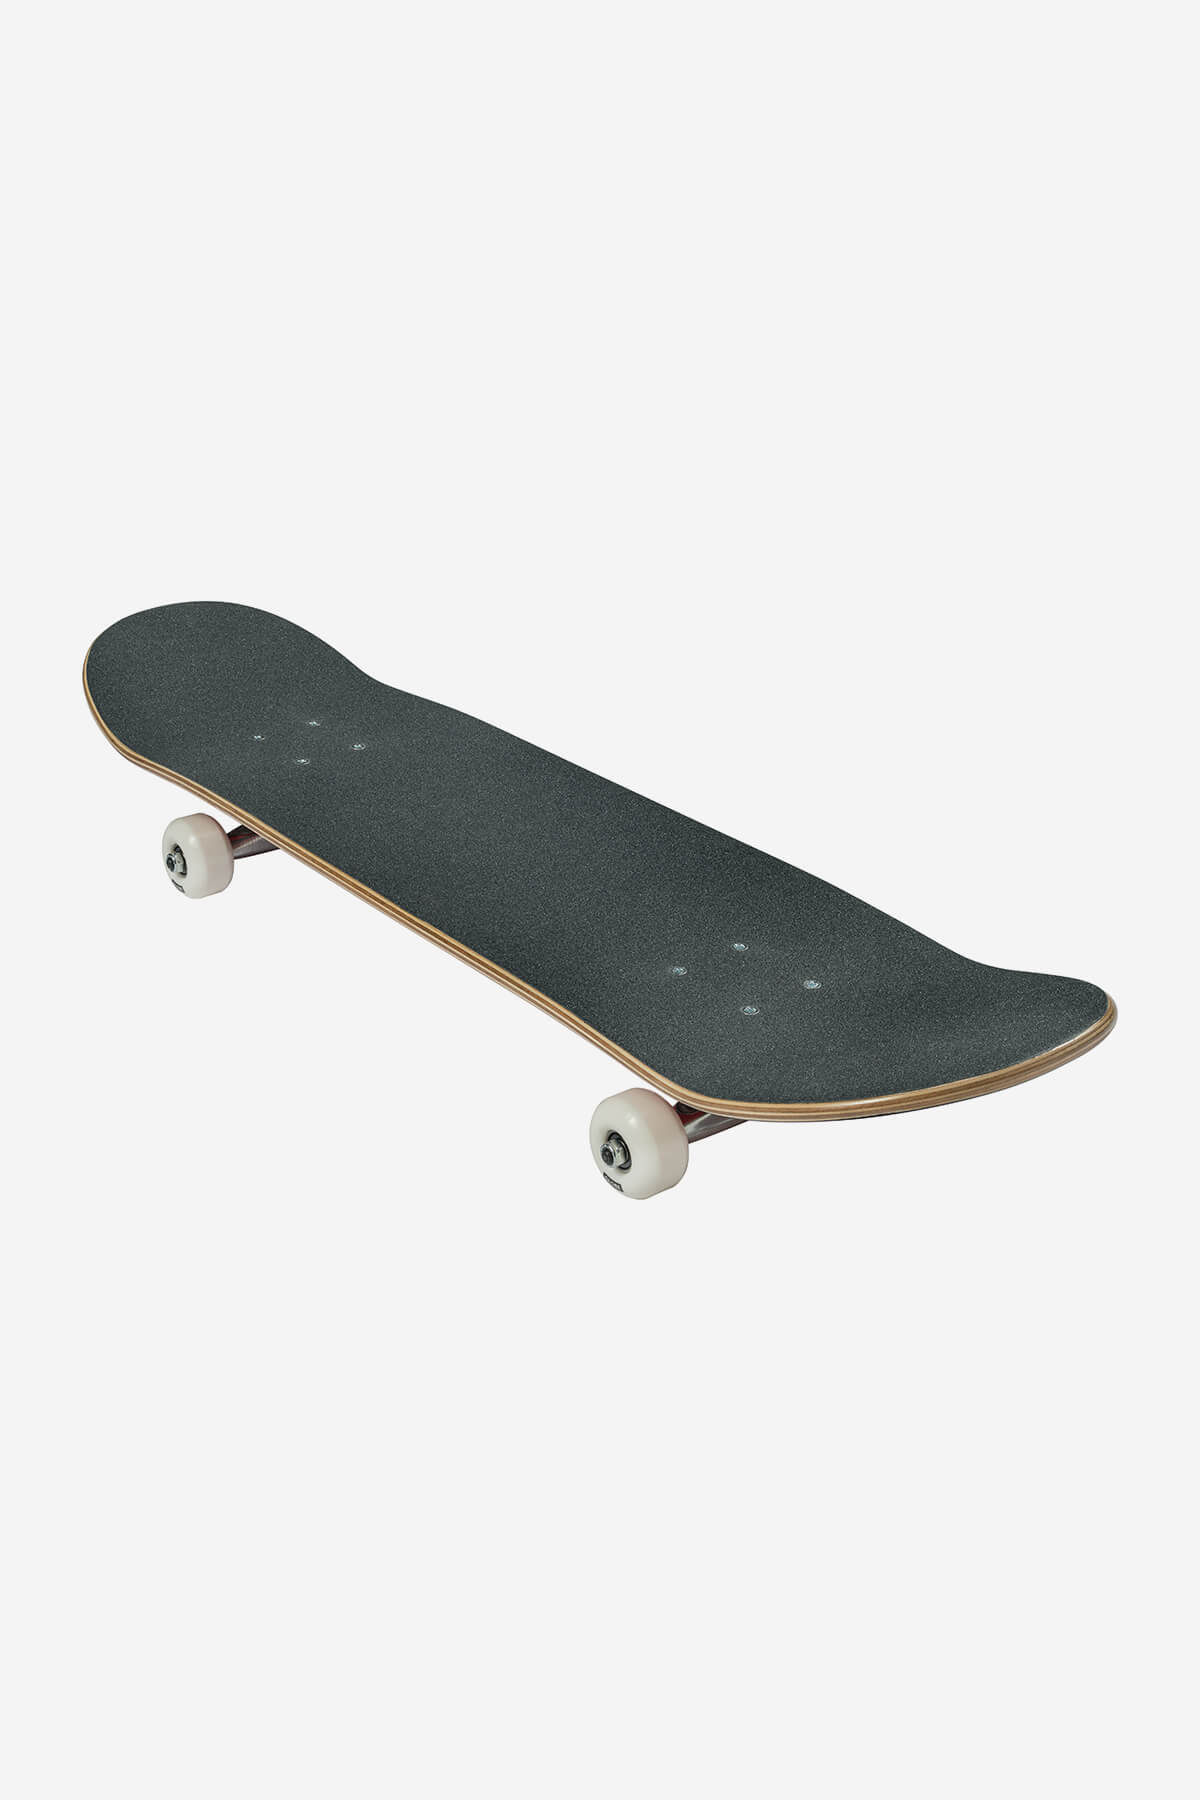 g0 fubar nero red 7,75" completo skateboard